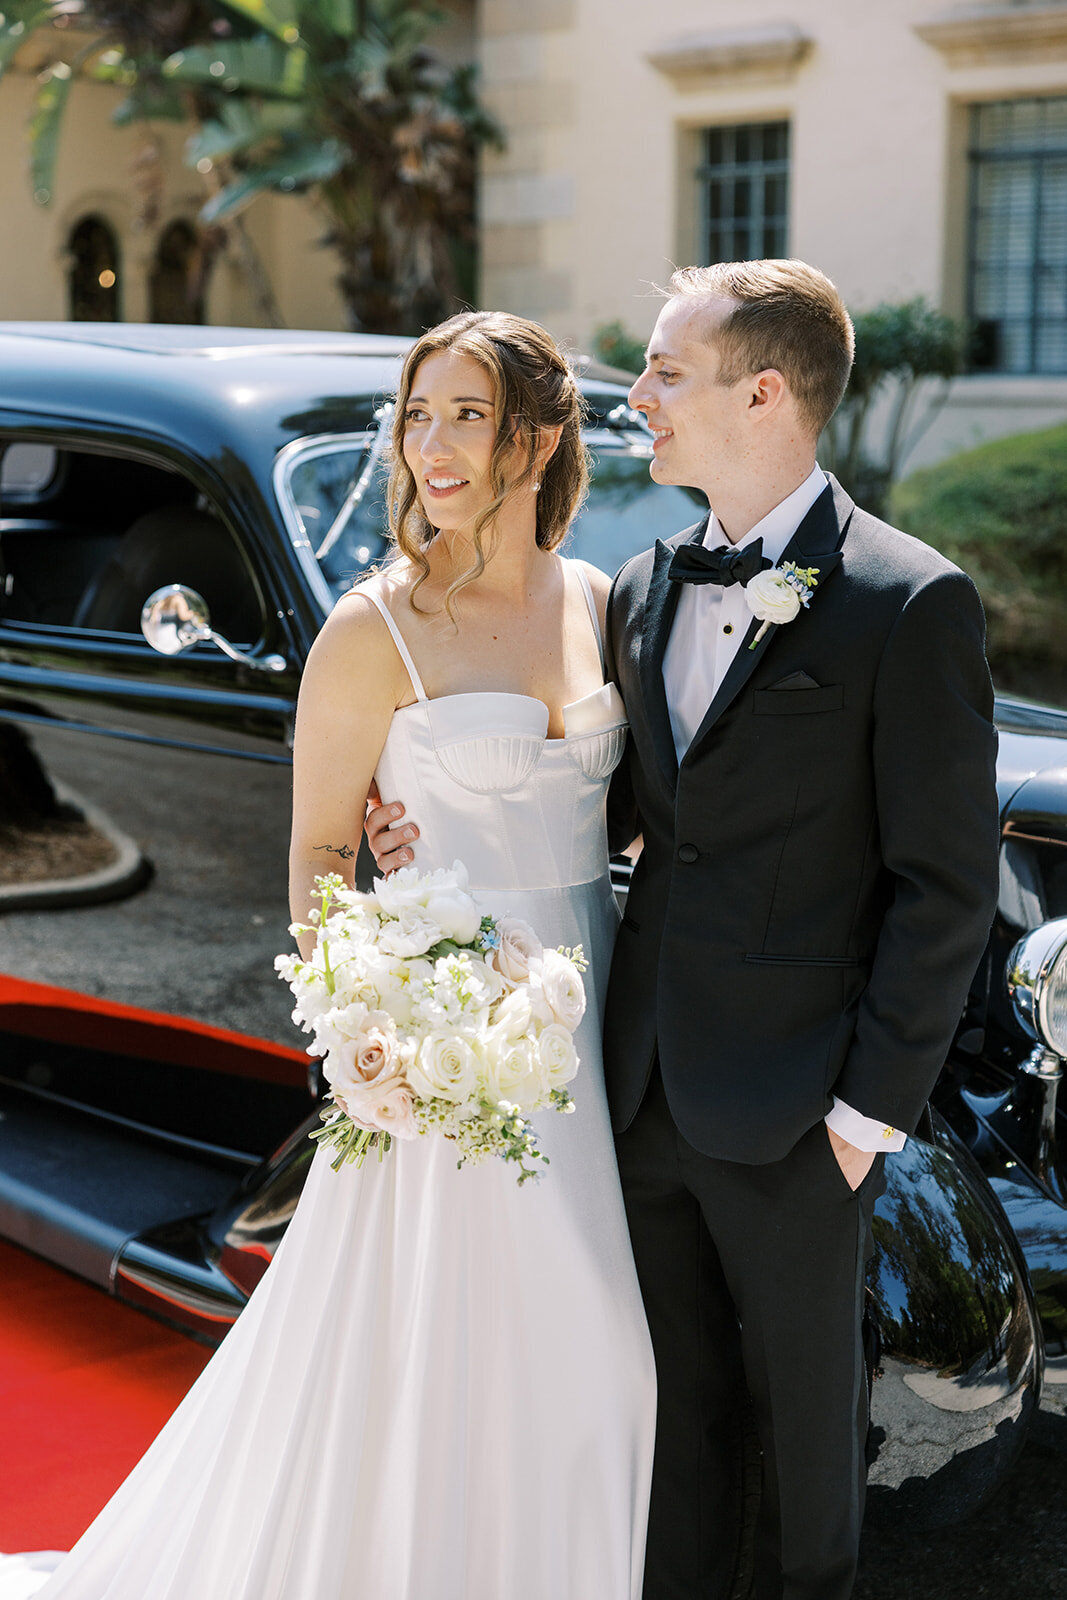 CORNELIA ZAISS PHOTOGRAPHY COURTNEY + ANDREW WEDDING 0432_websize